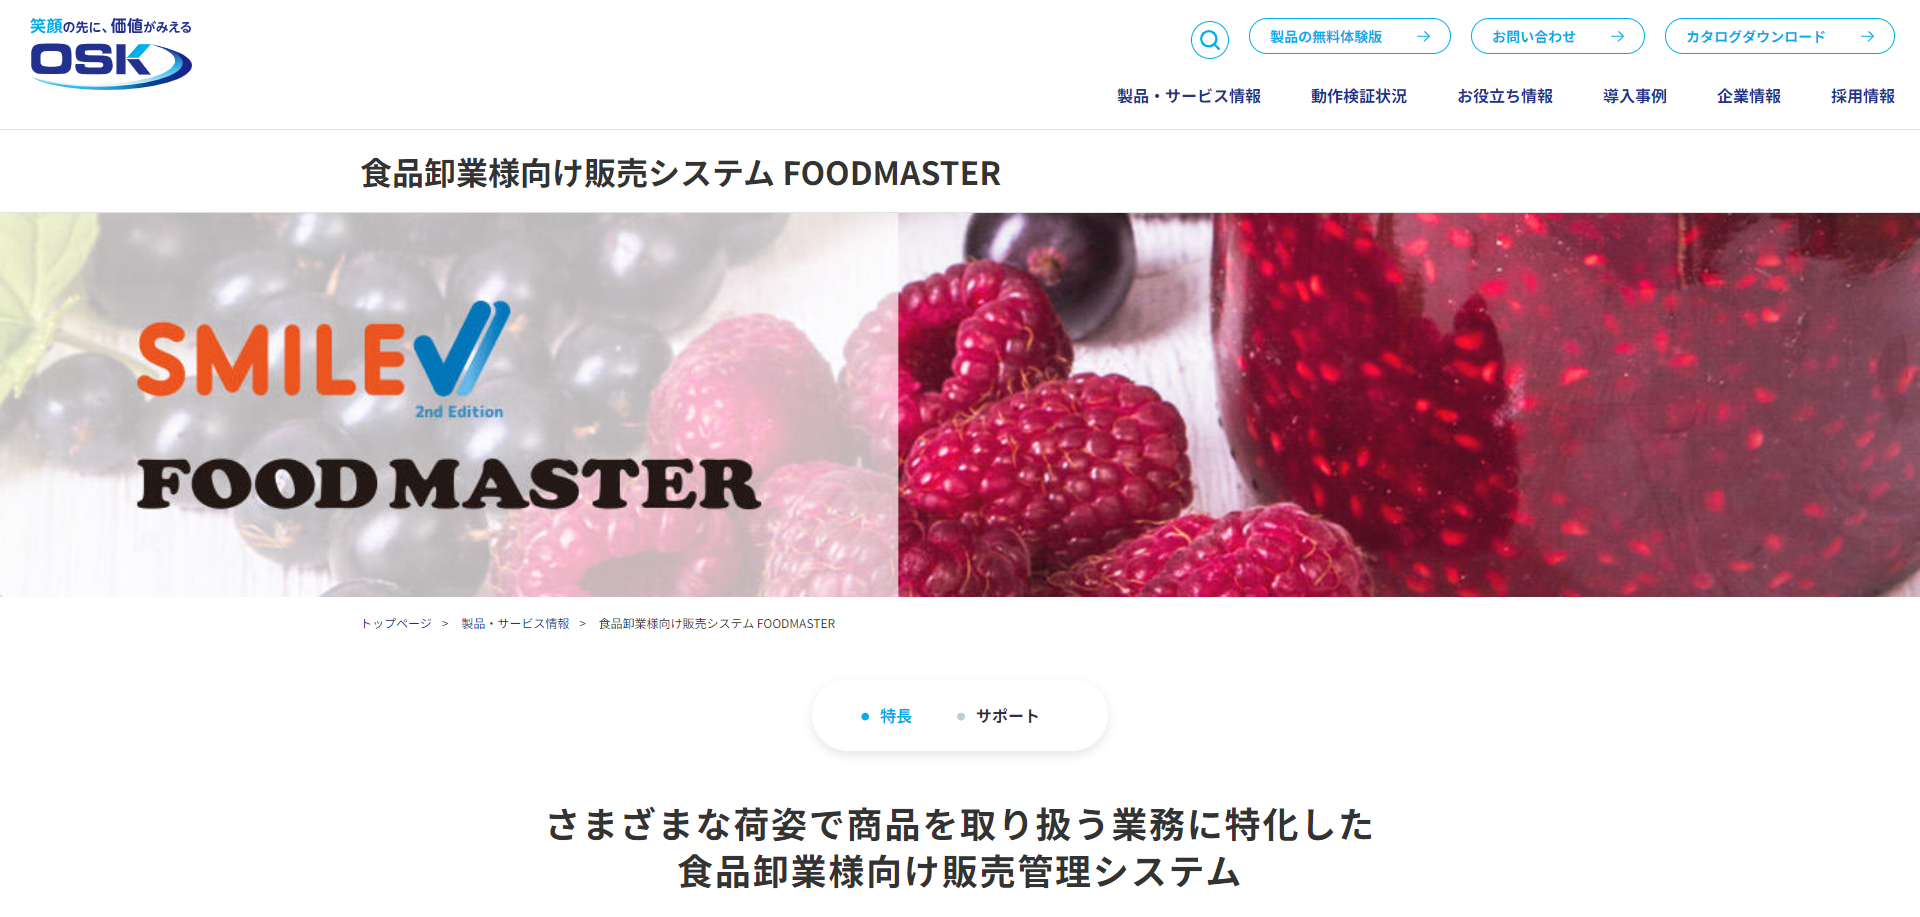  食品卸業様向け販売管理システム 『FOODMASTER』